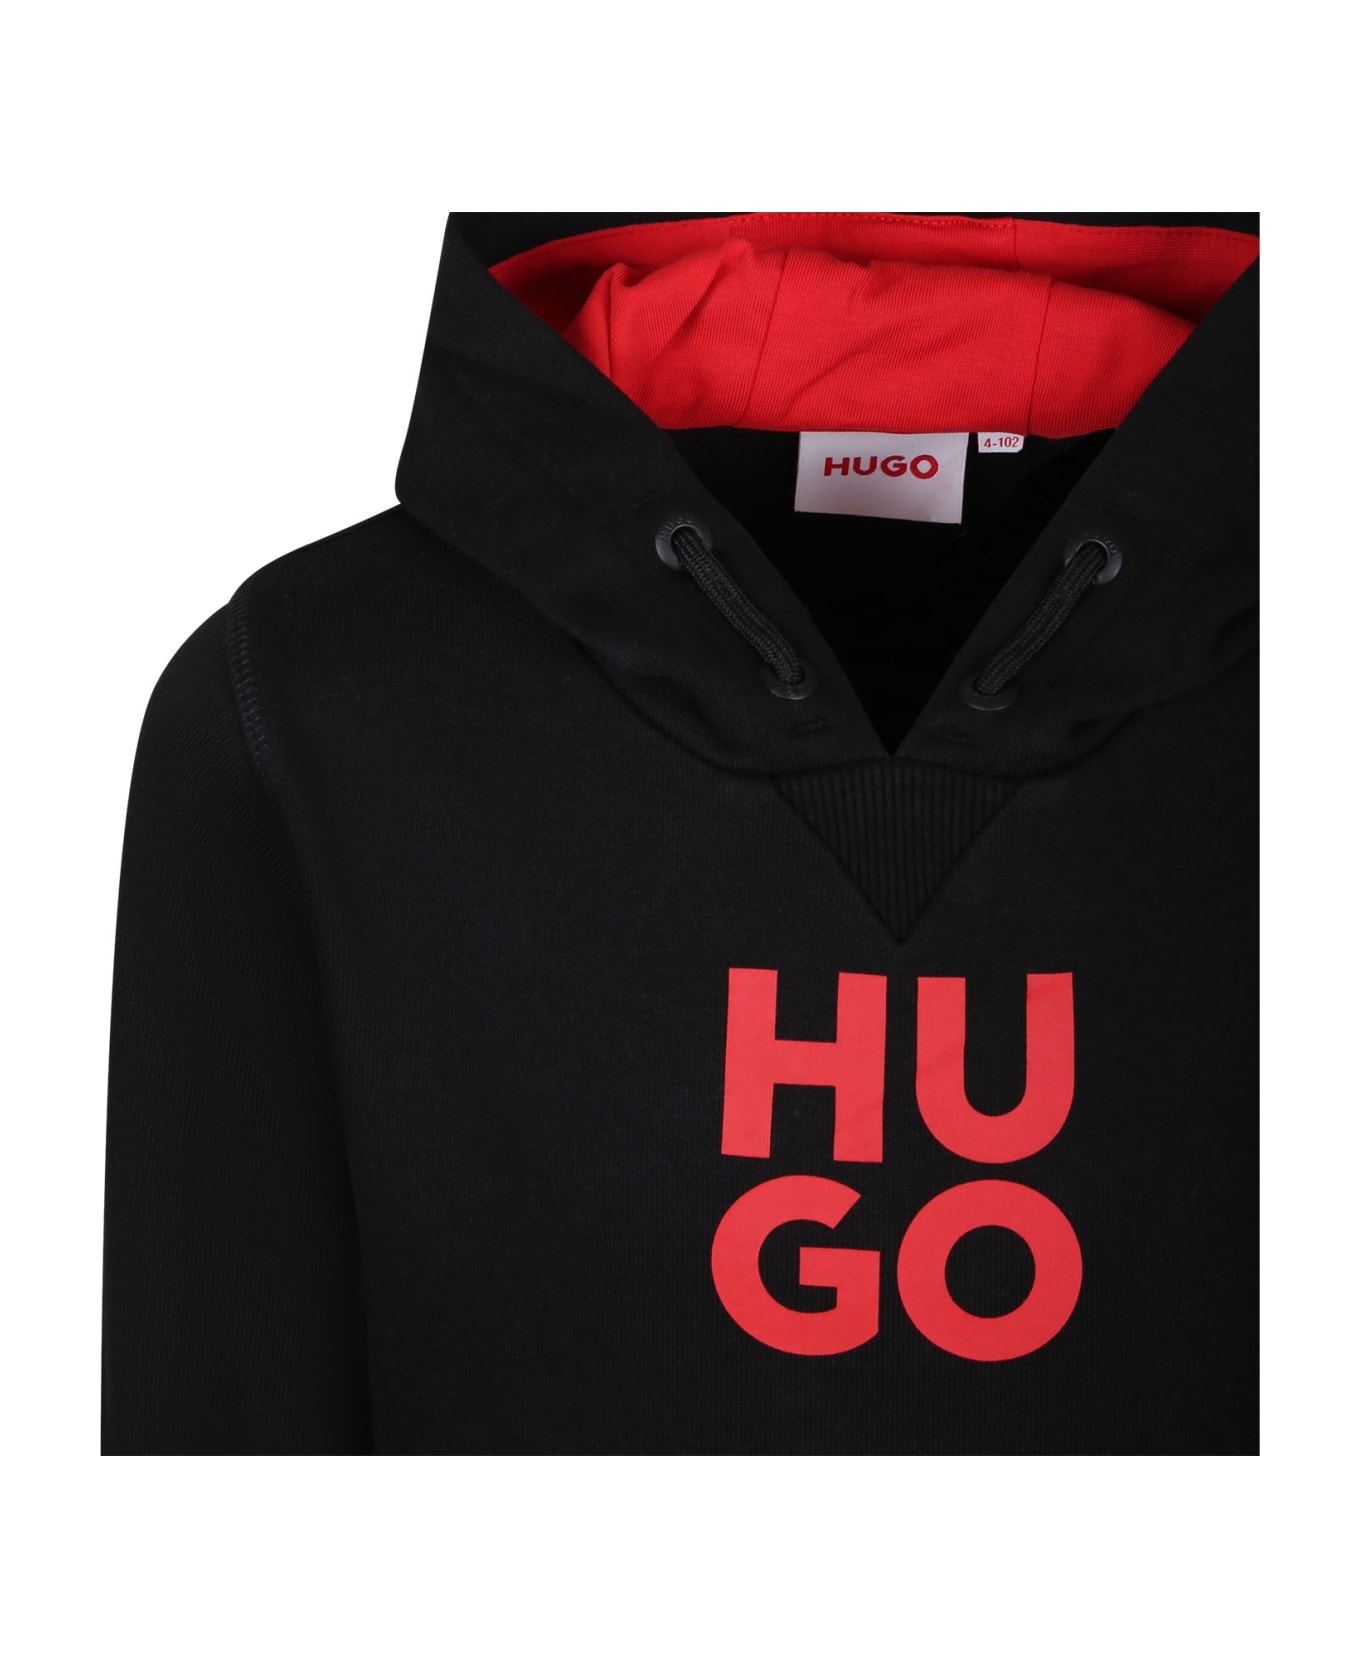 Hugo Boss Black Sweatshirt For Boy With Hood And Logo - Black ニットウェア＆スウェットシャツ